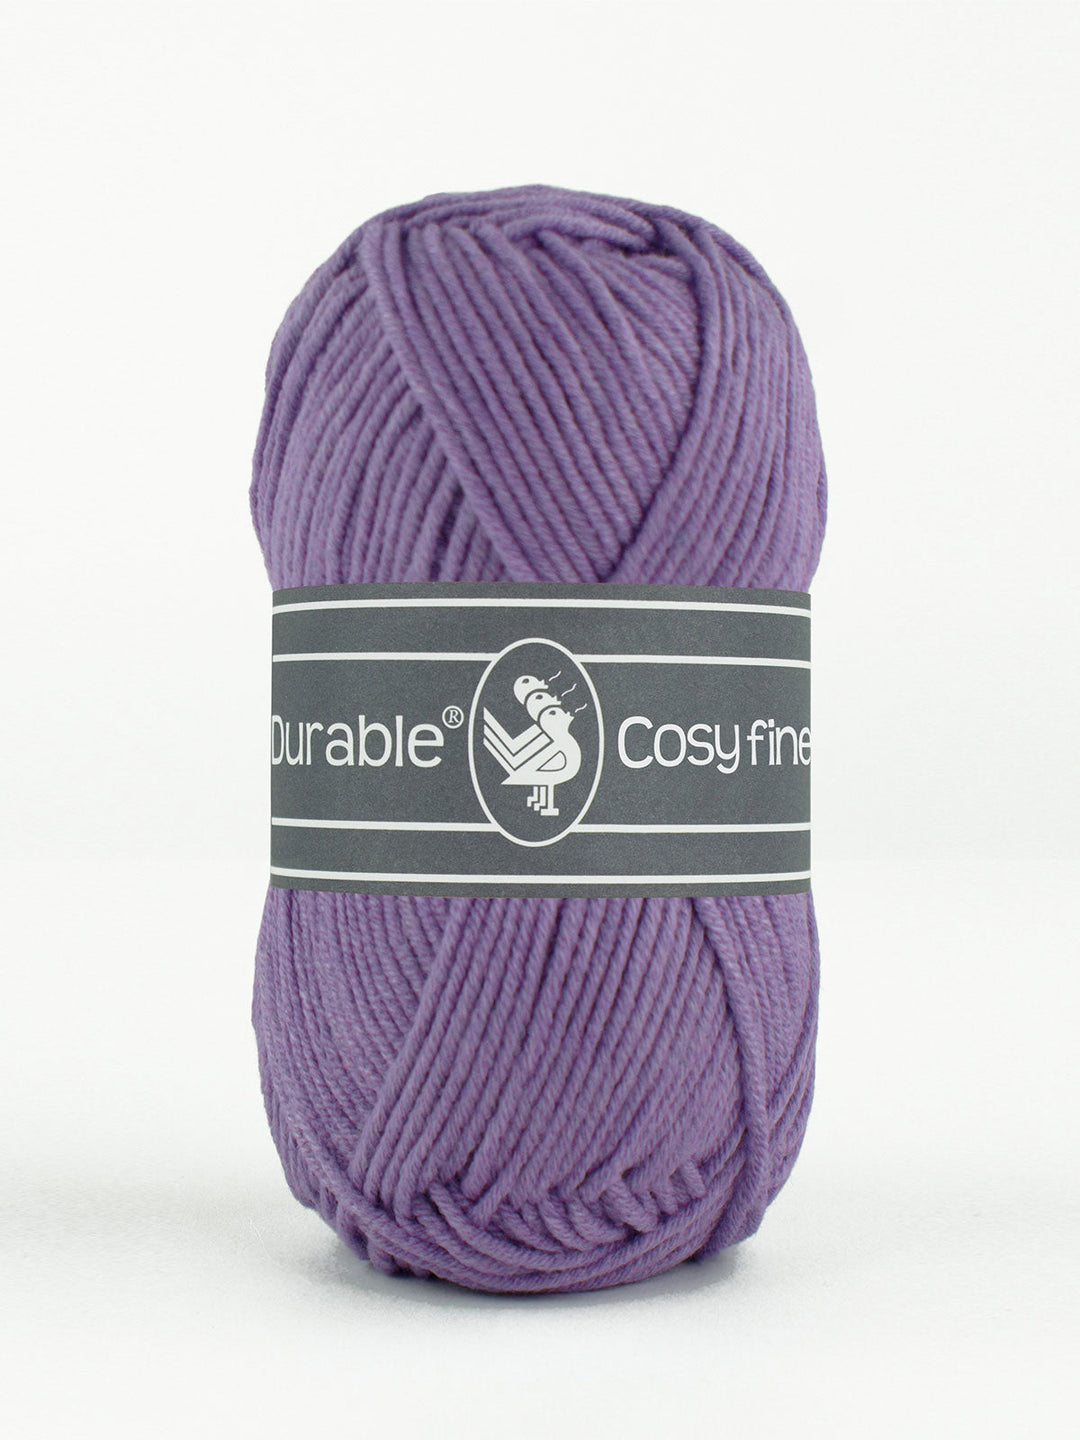 Durable Cosy Fine 269 Light purple